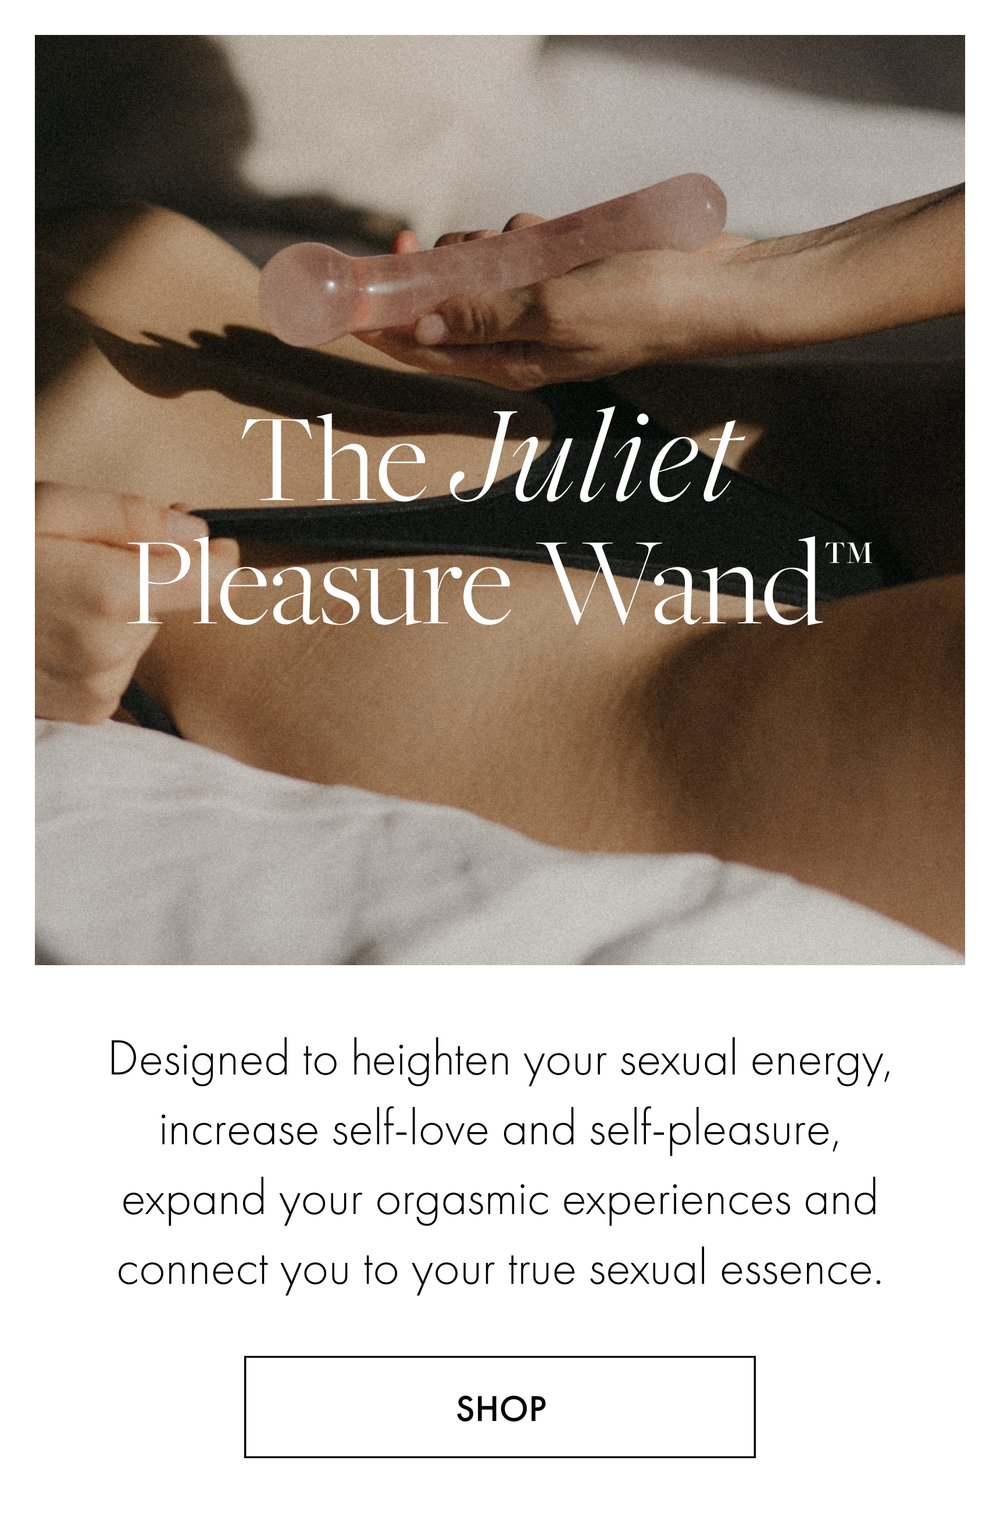 Juliet Allen Sexologist_Whats Next Card_Shop The Juliet Pleasure Wand.jpg